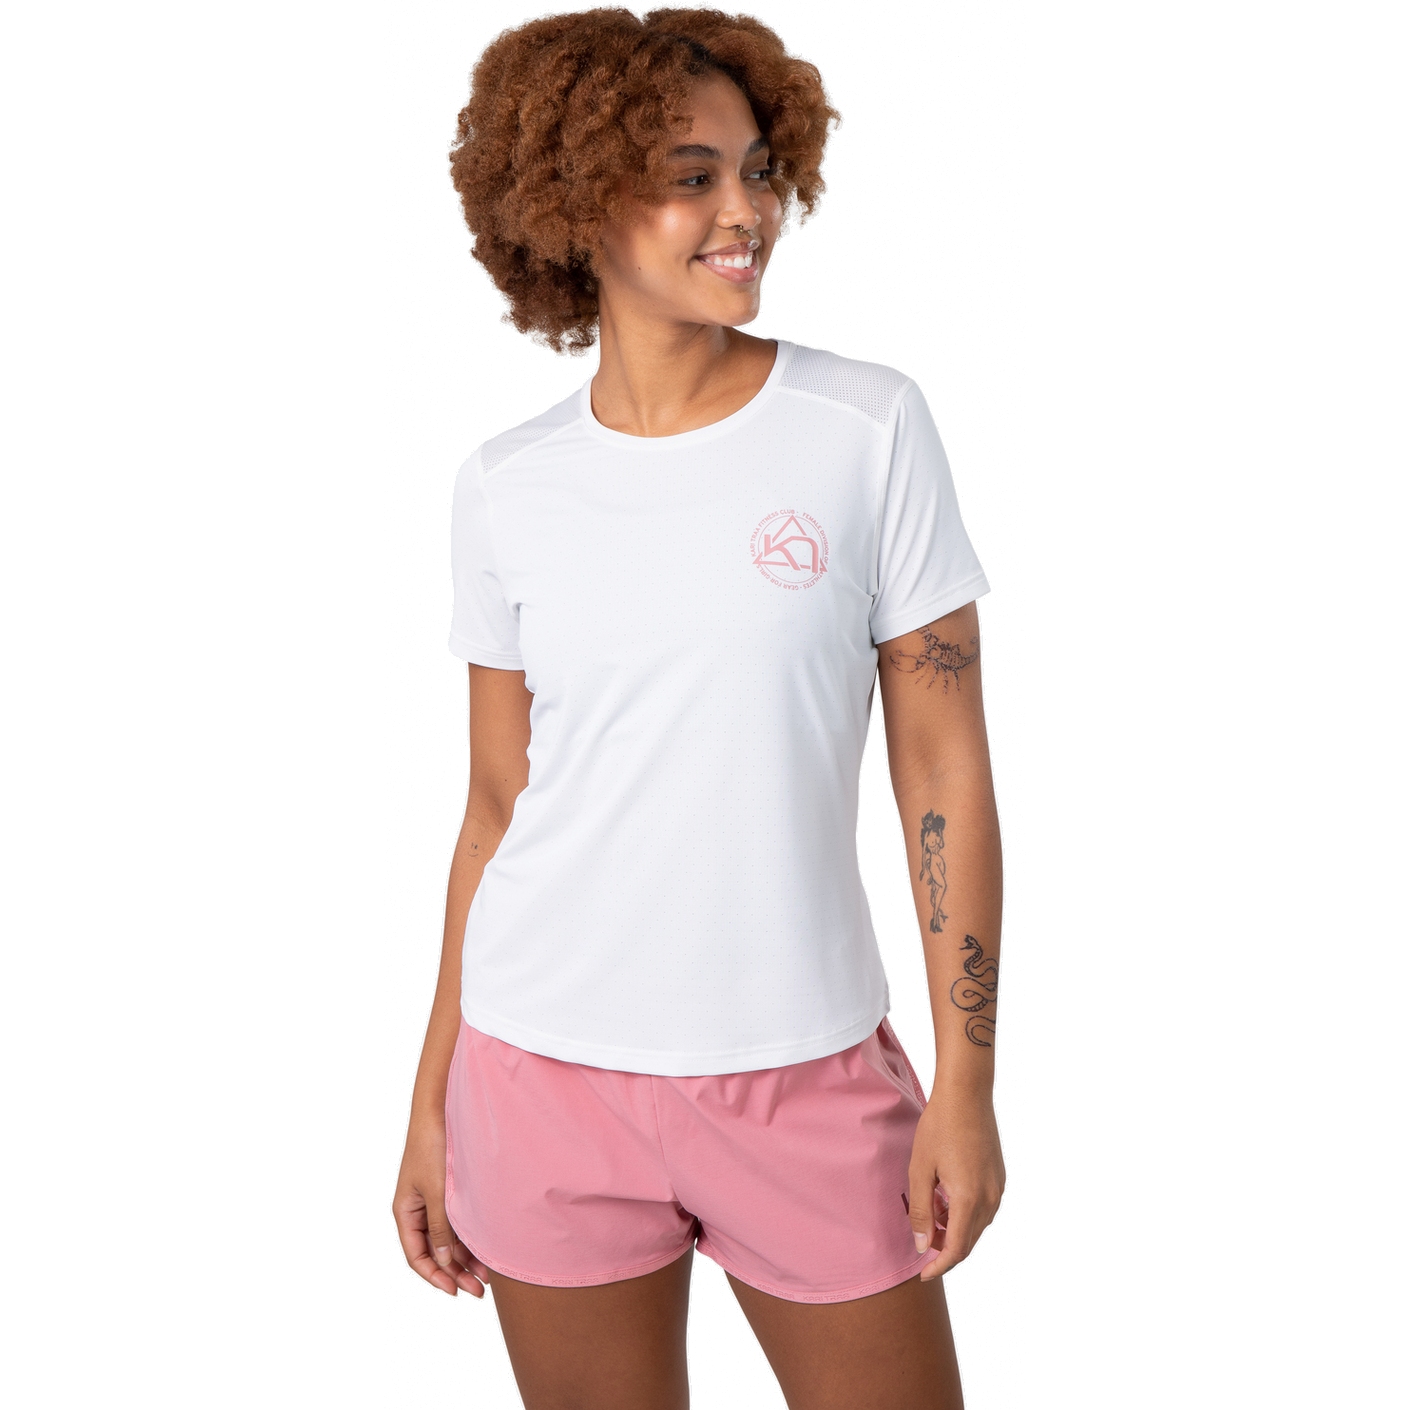 Produktbild von Kari Traa Vilde Active T-Shirt Damen - weiß